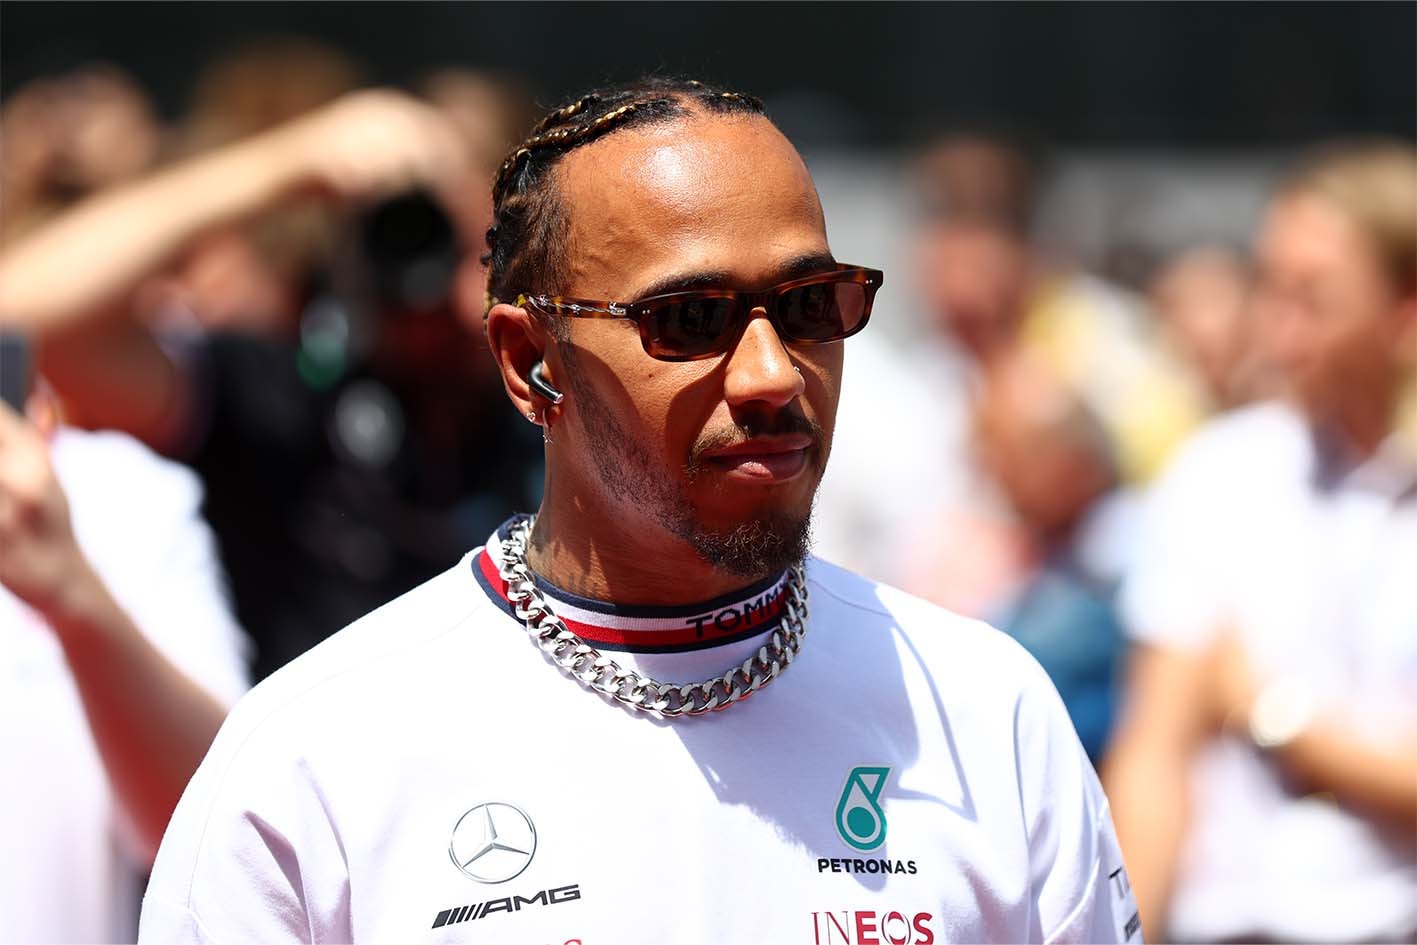 為對手車禍歡呼？F1 車手 Lewis Hamilton 批評車迷行徑「令人難以置信」